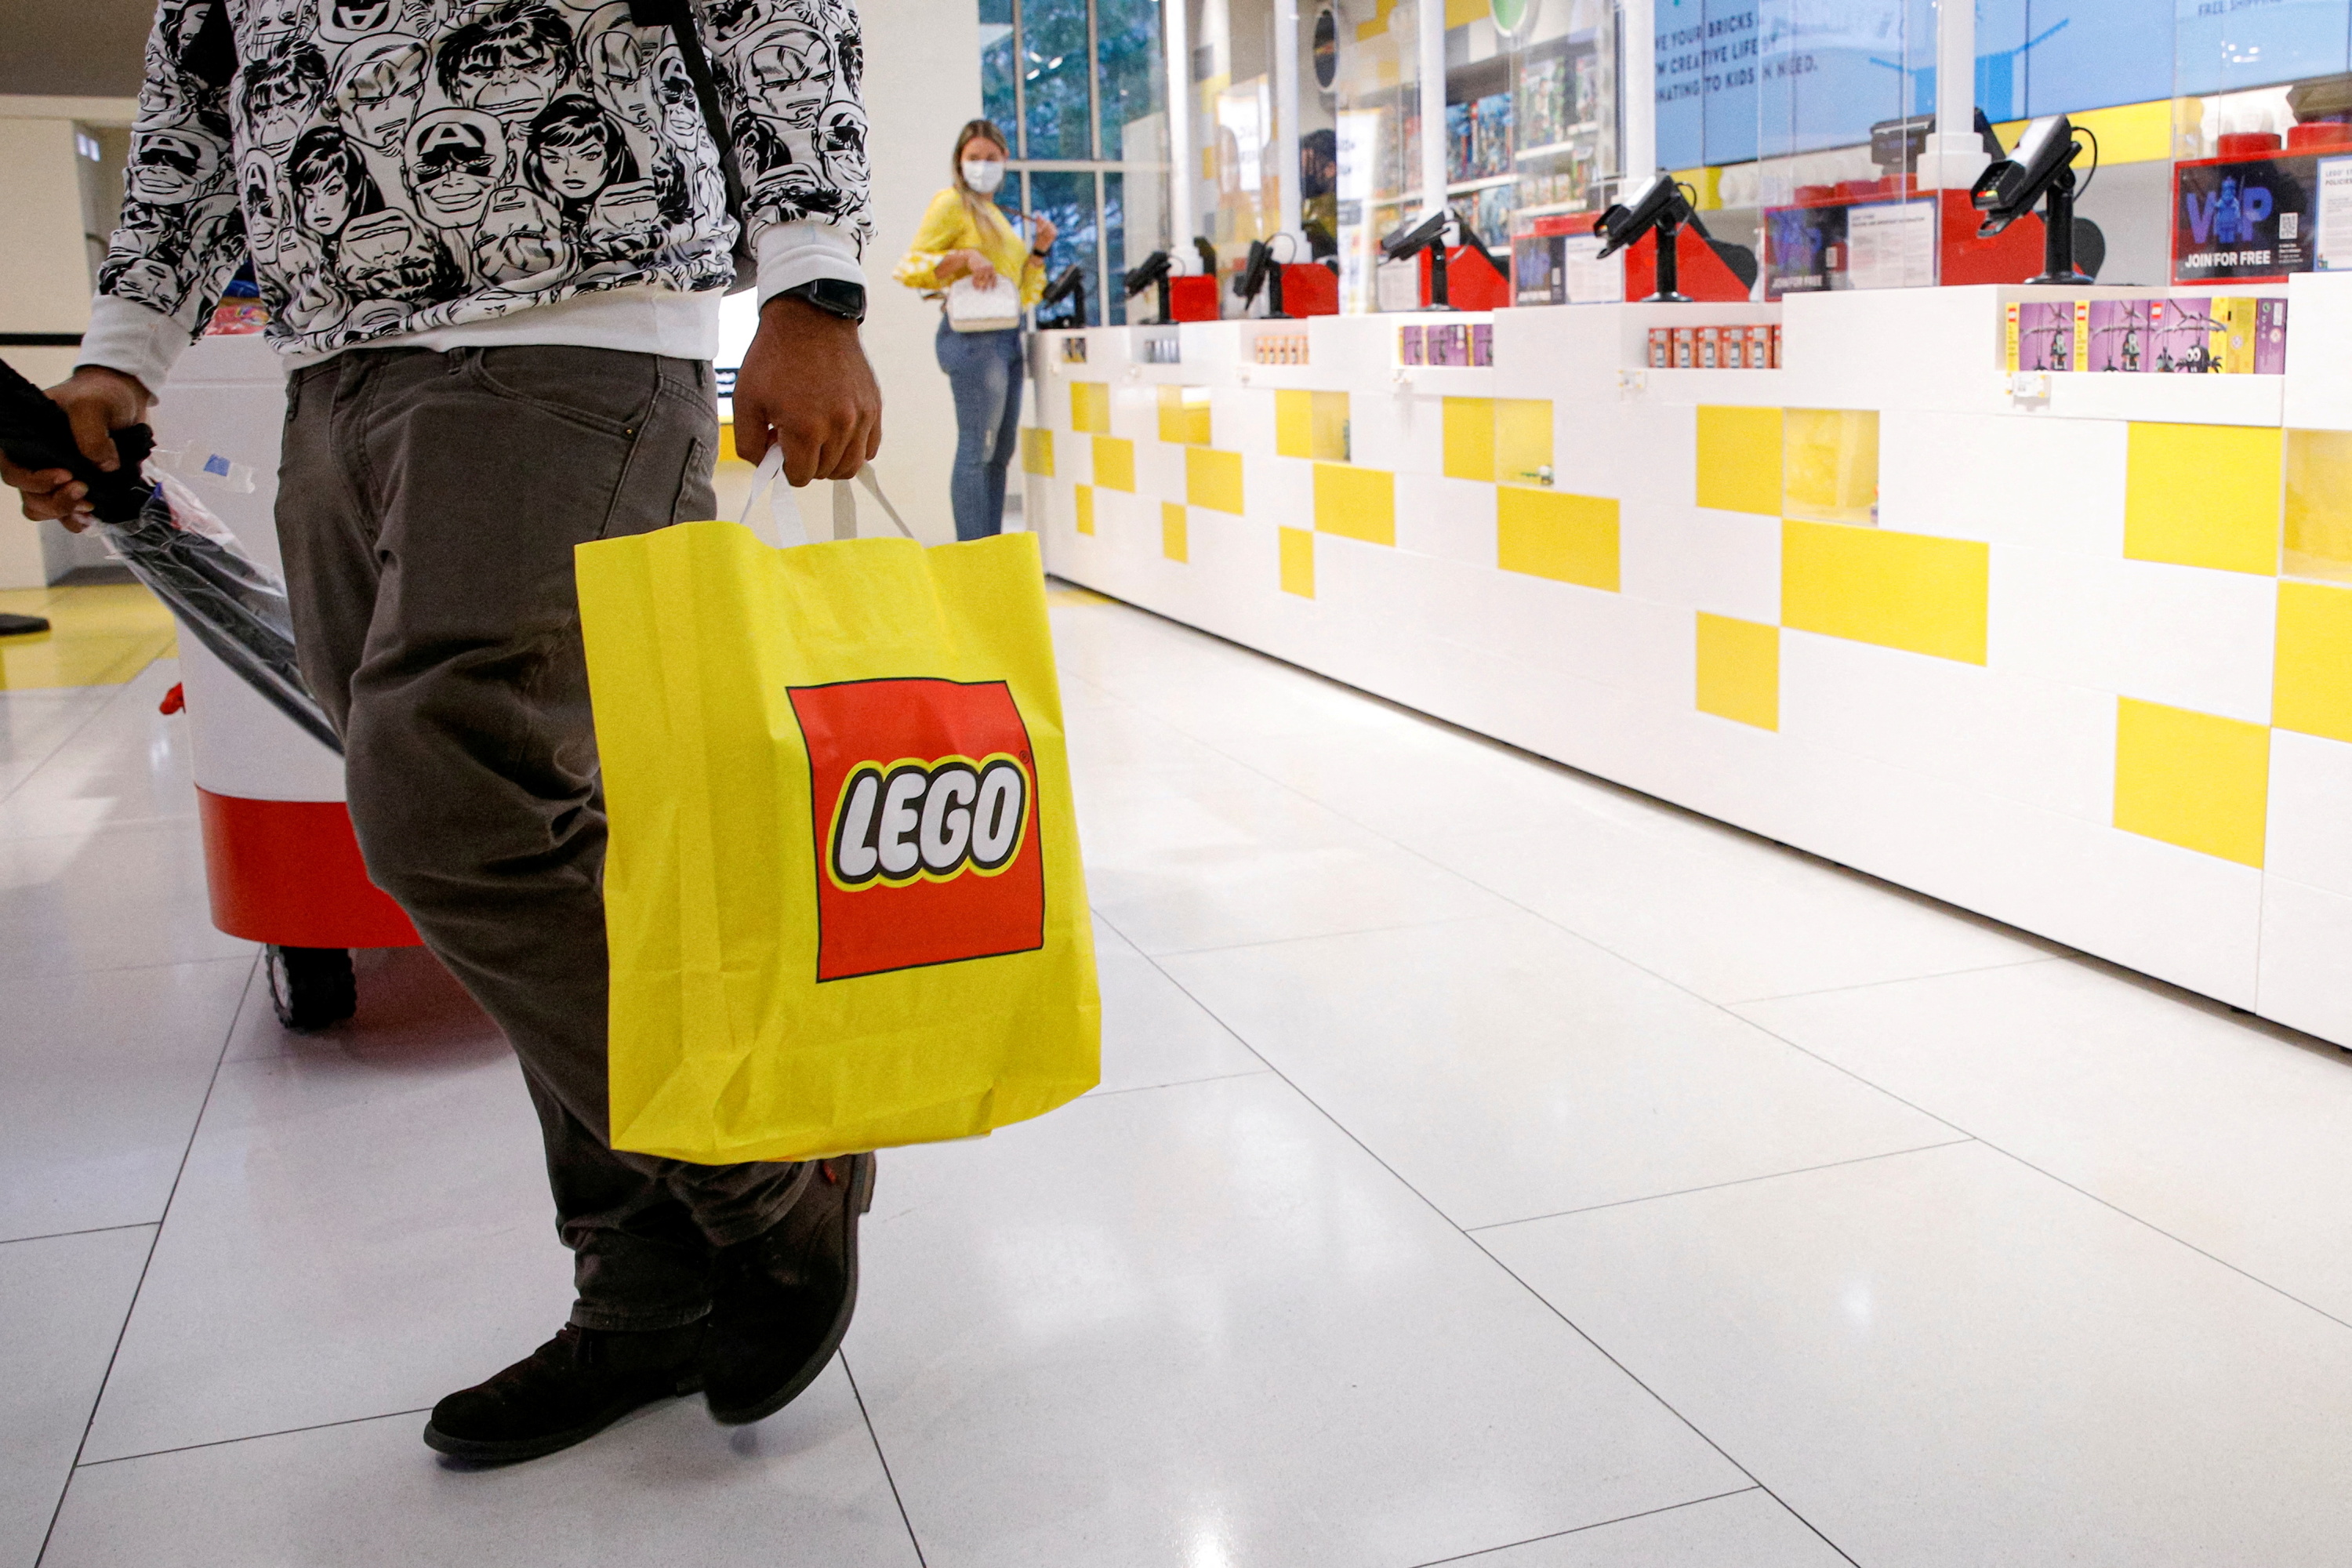 Lego : un investissement qui peut rapporter gros